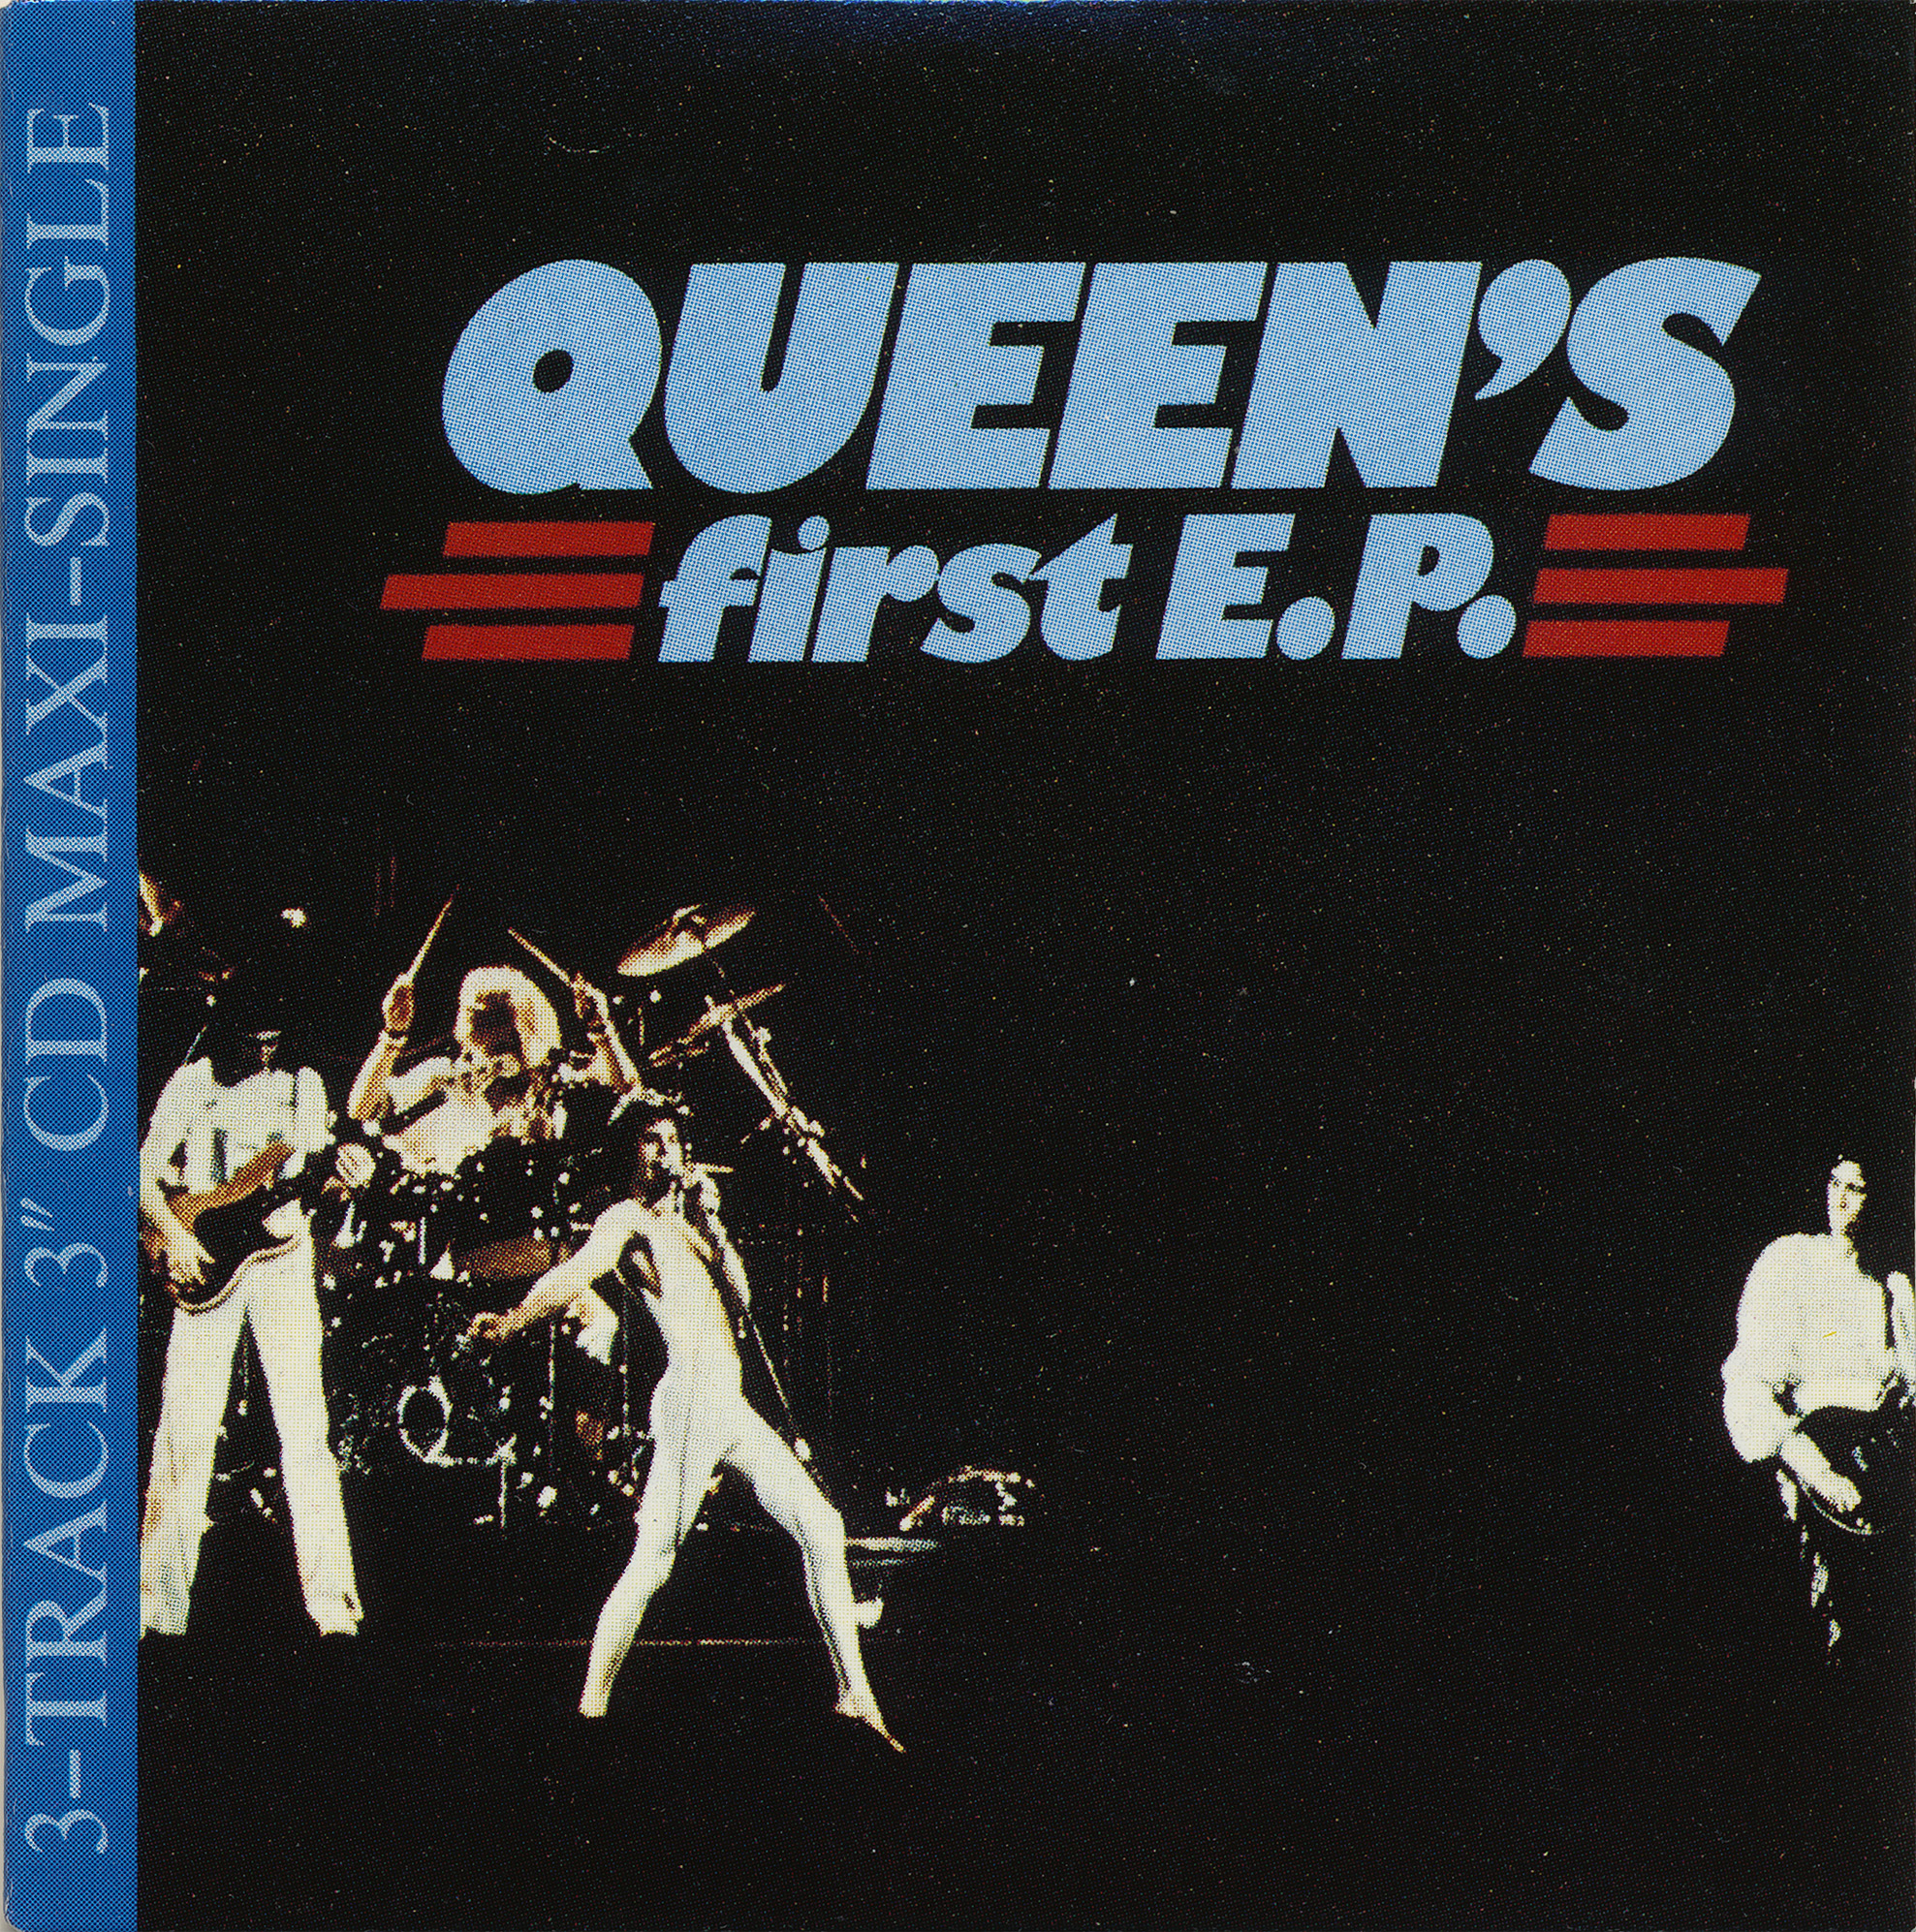 Singles flac. Queen 1 альбом. Queen обложки альбомов. Queen 1973 альбом. Queen II альбом.